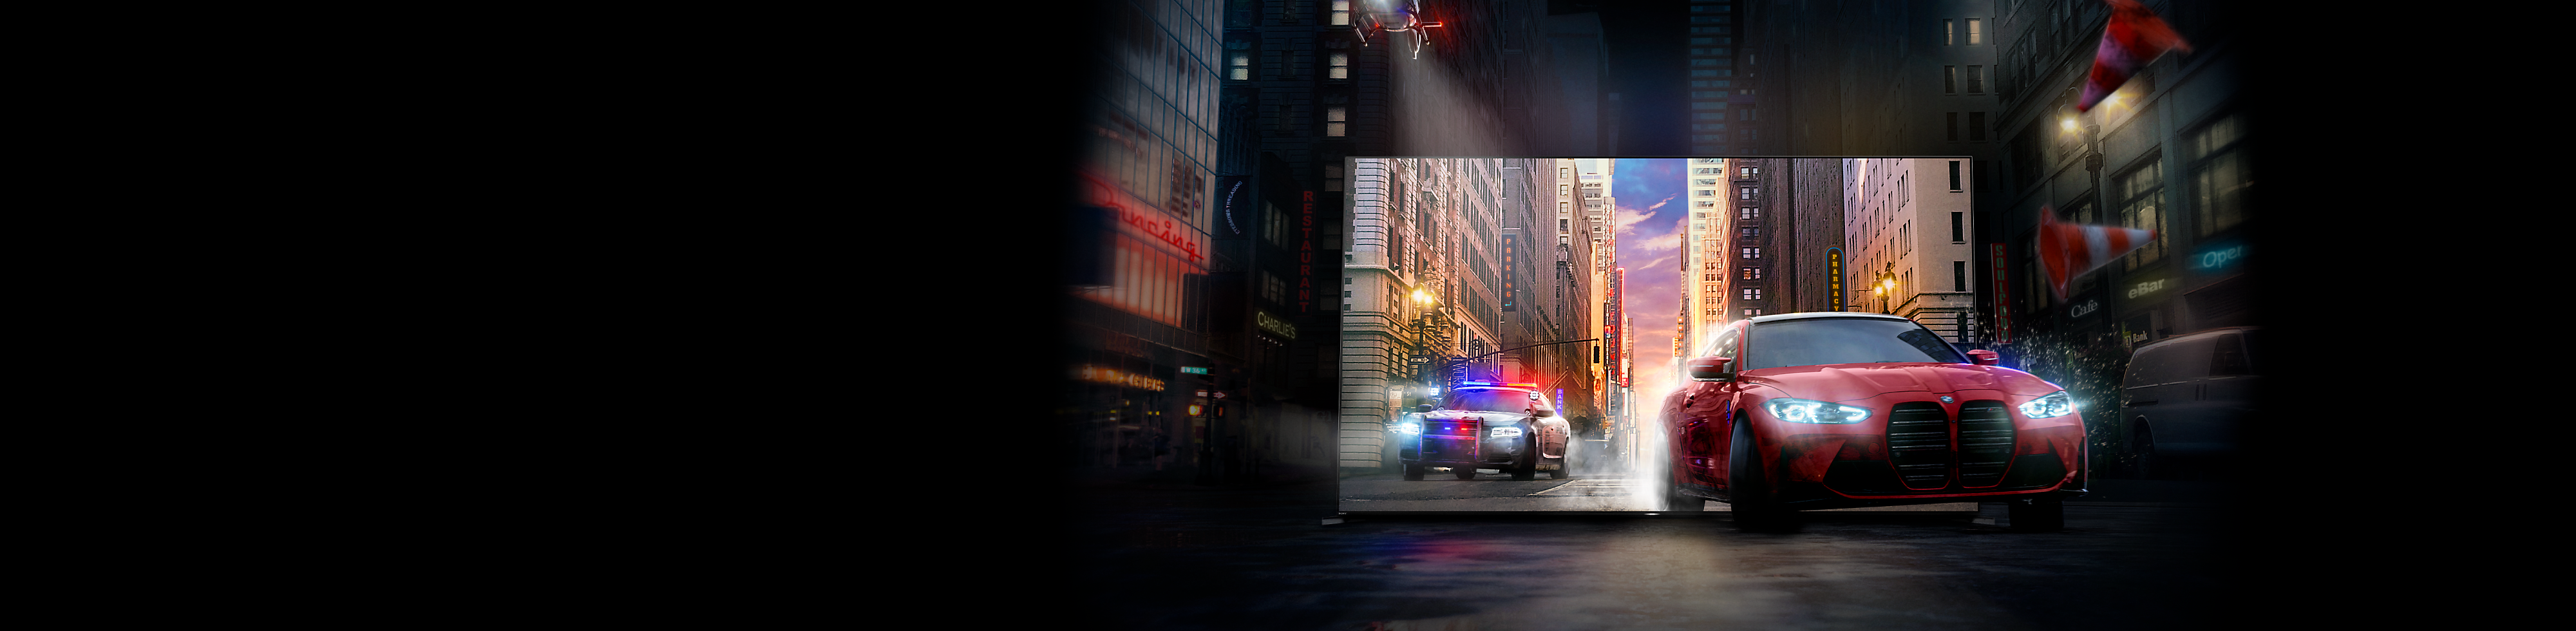 Rdeči avtomobil, ki mu sledi policijski avtomobil, zapelje iz zaslona televizorja BRAVIA na mestno ulico